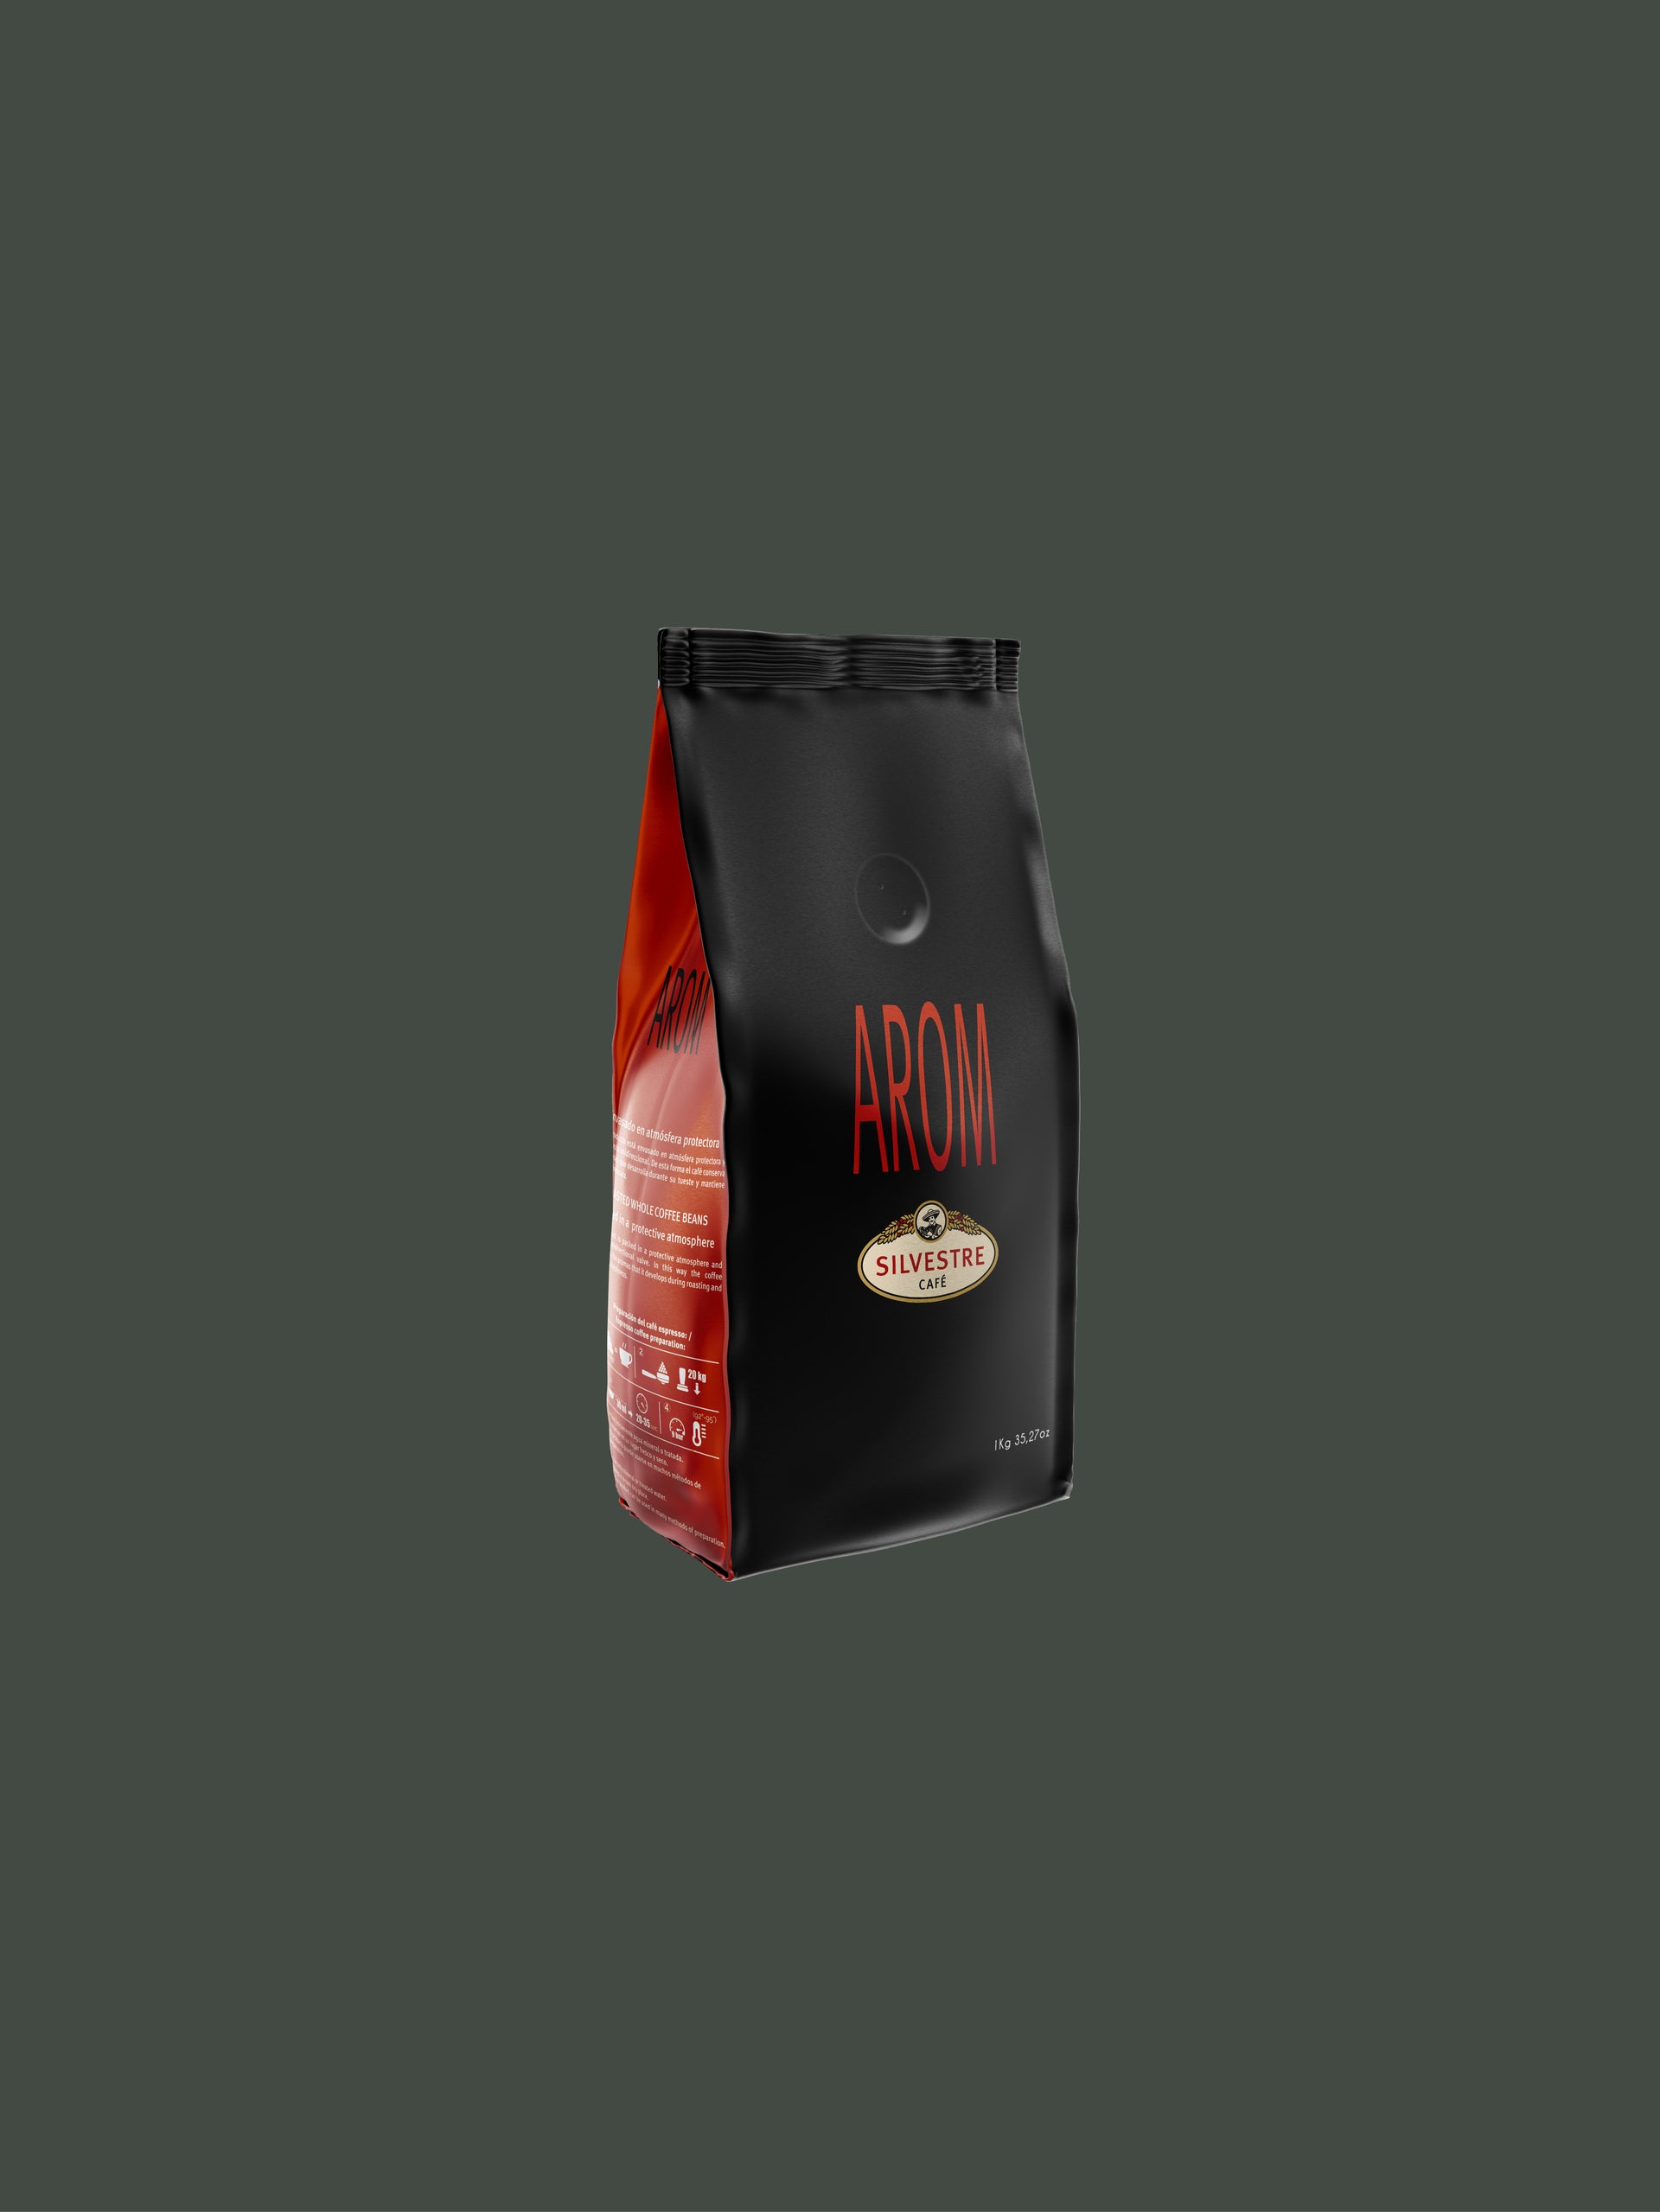 Découvrez Arom: Café Grains - Un mélange riche en saveurs, 70% Arabica, 30% Robusta, notes de miel, cannelle et noix